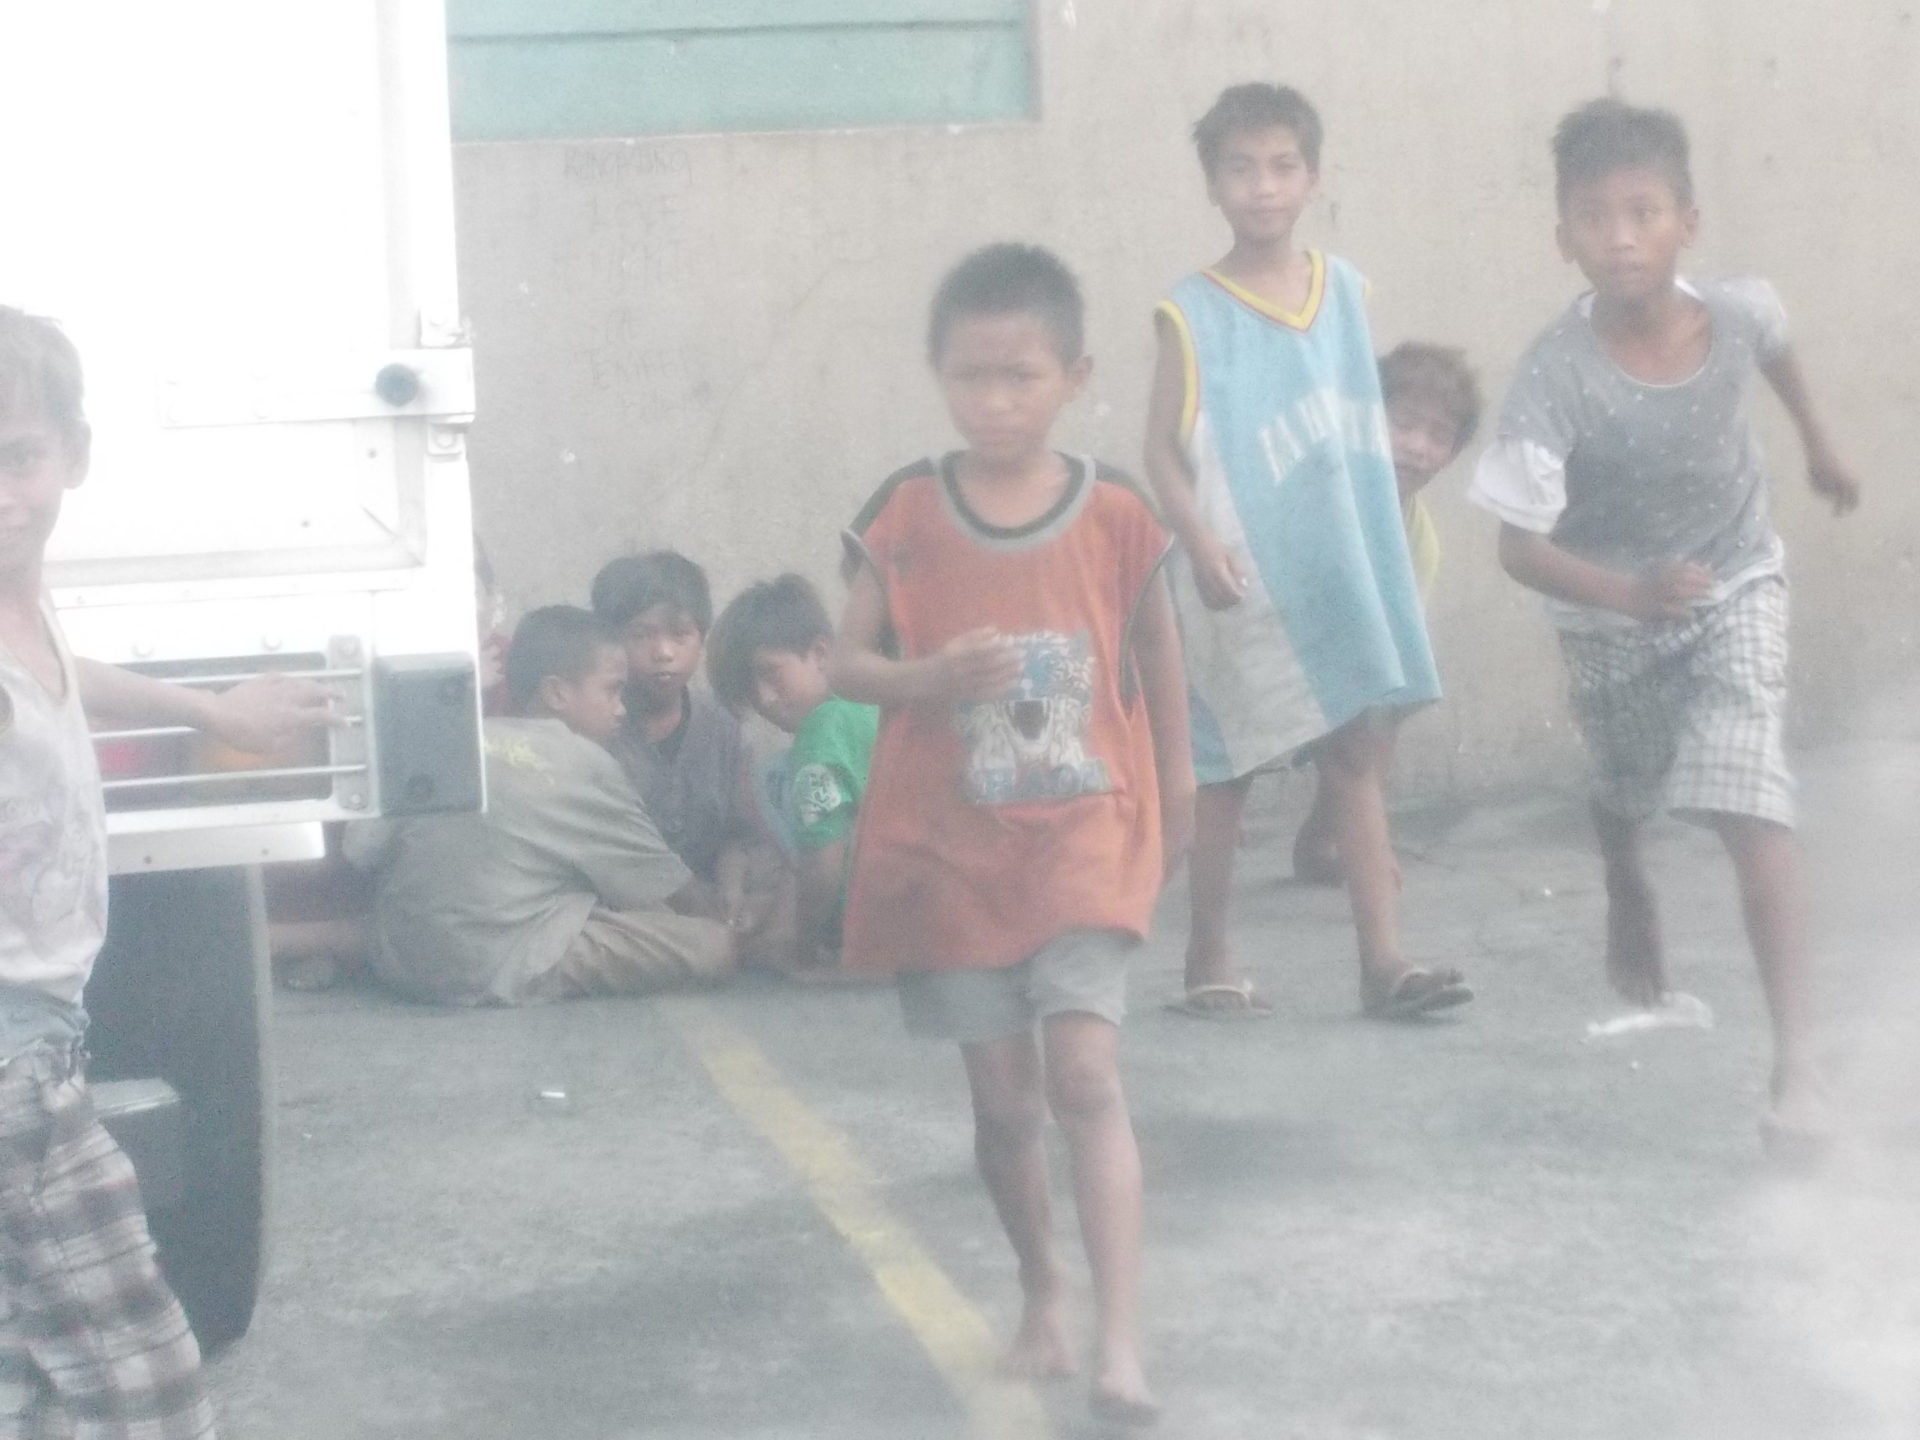 Auf dem Bild sind mehrere Straßenkinder zu sehen.